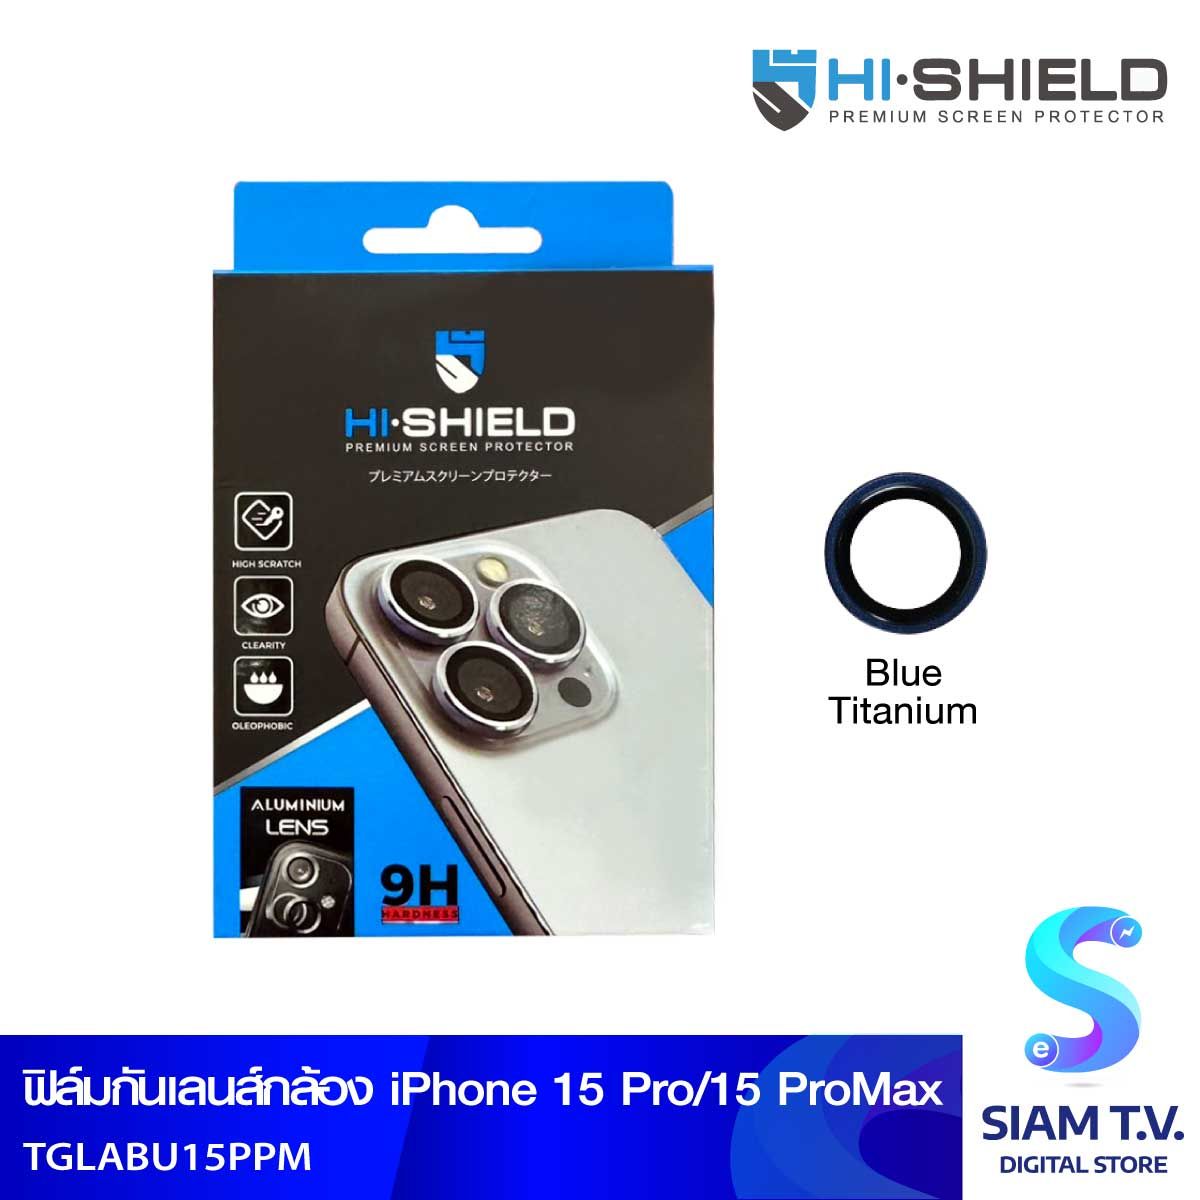 HISHIELD Aluminium Lens Blue Titanium iPhone 15 Pro/ProMax